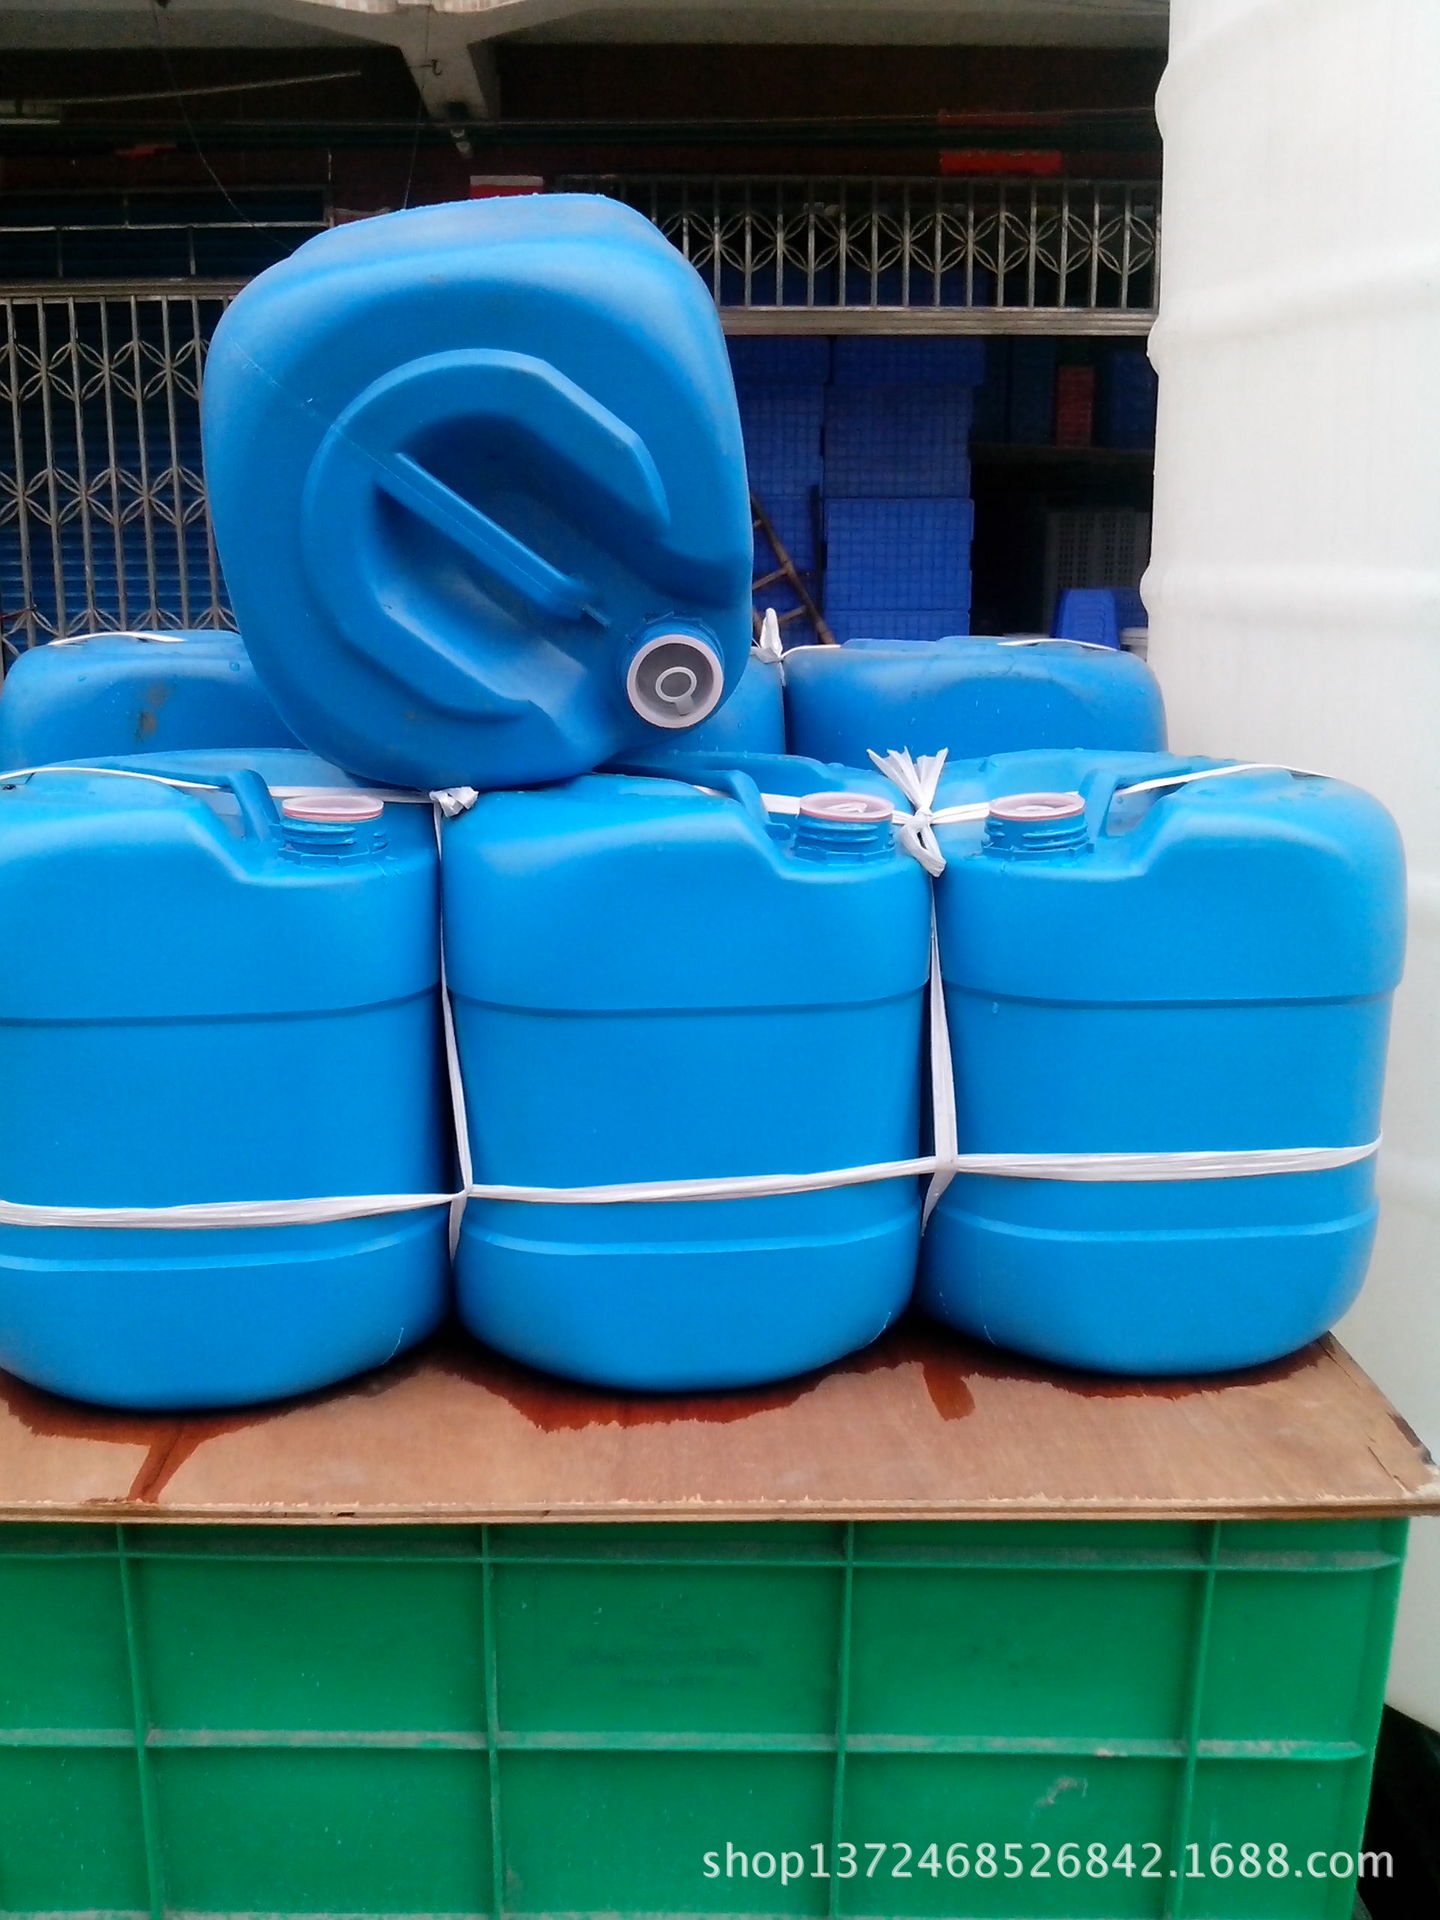 东莞常平司马塑料厂家供应最便宜20升塑胶料